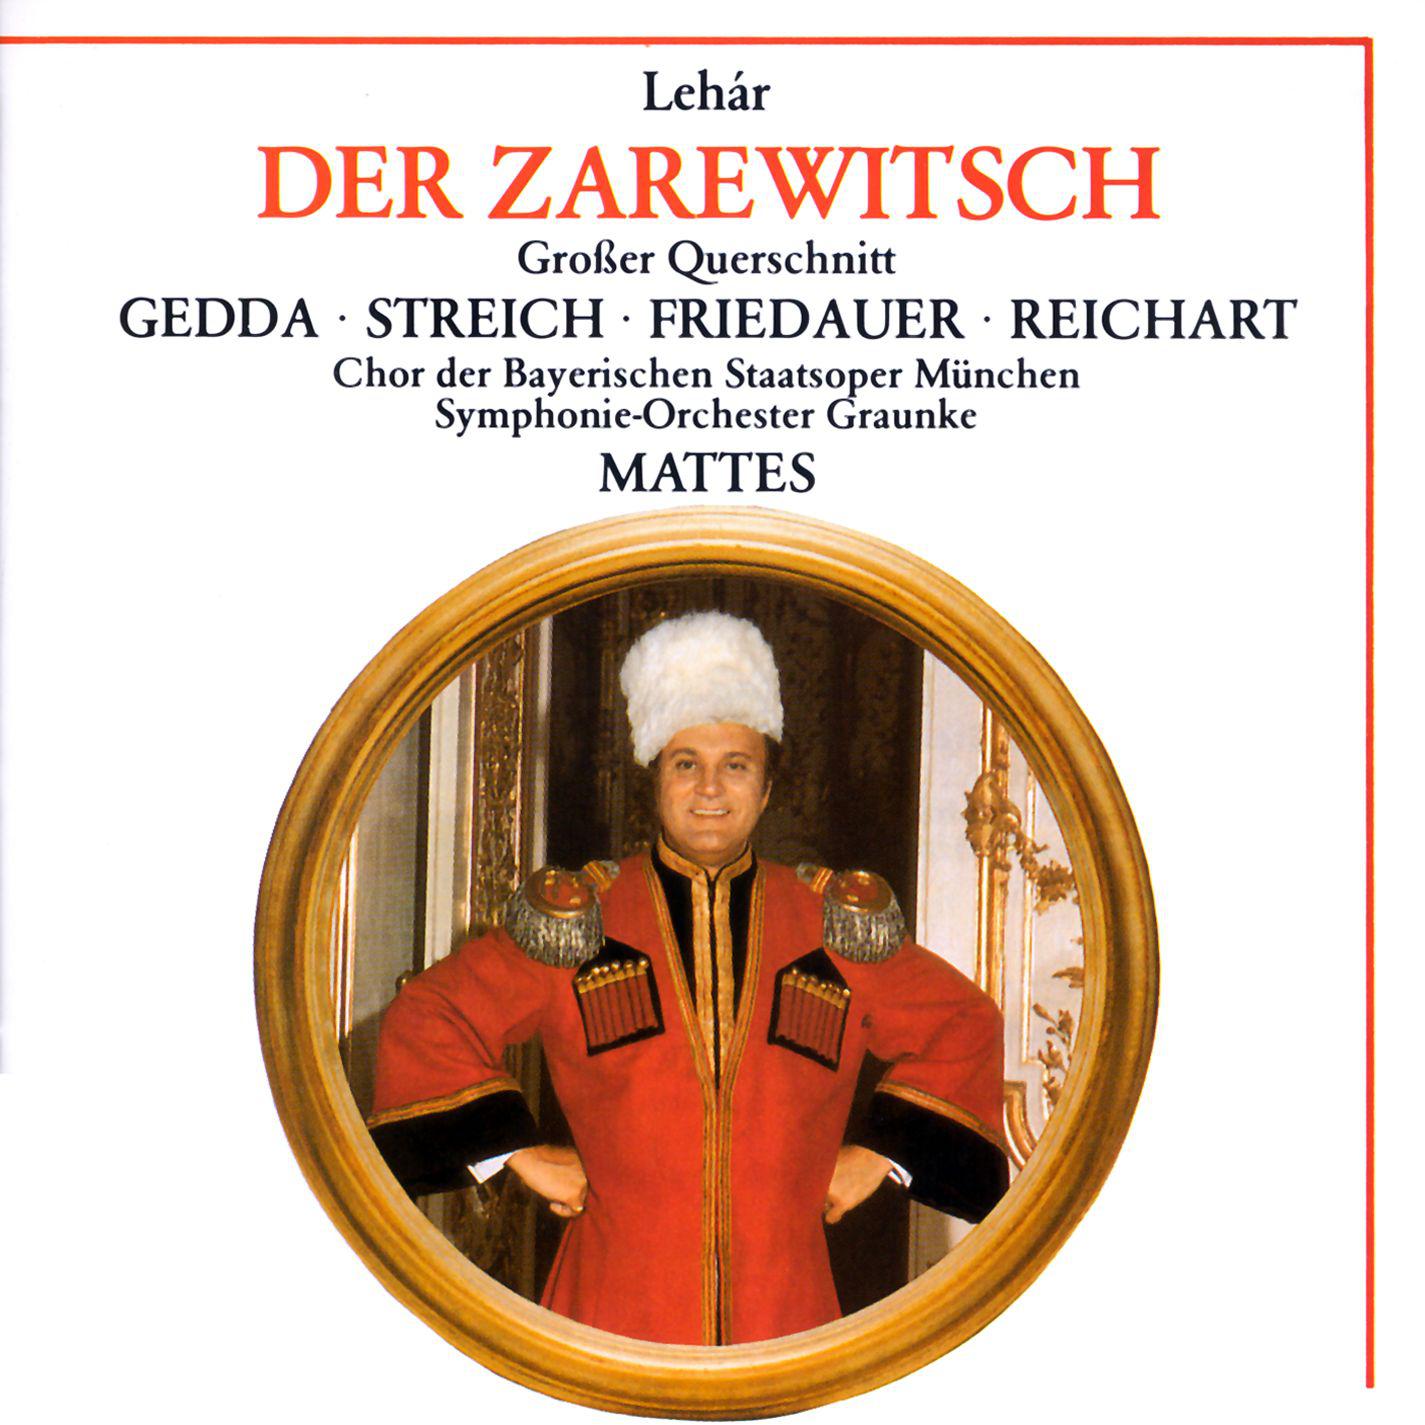 Rita Streich - Der Zarewitsch · Highlights (1988 Remastered Version), Erster Akt:Ein Weib! Du ein Weib! - Champagner ist ein Feuerwein - Es steht ein Soldat am Wolgastrand (Sonja - Zarewitsch - Iwan)